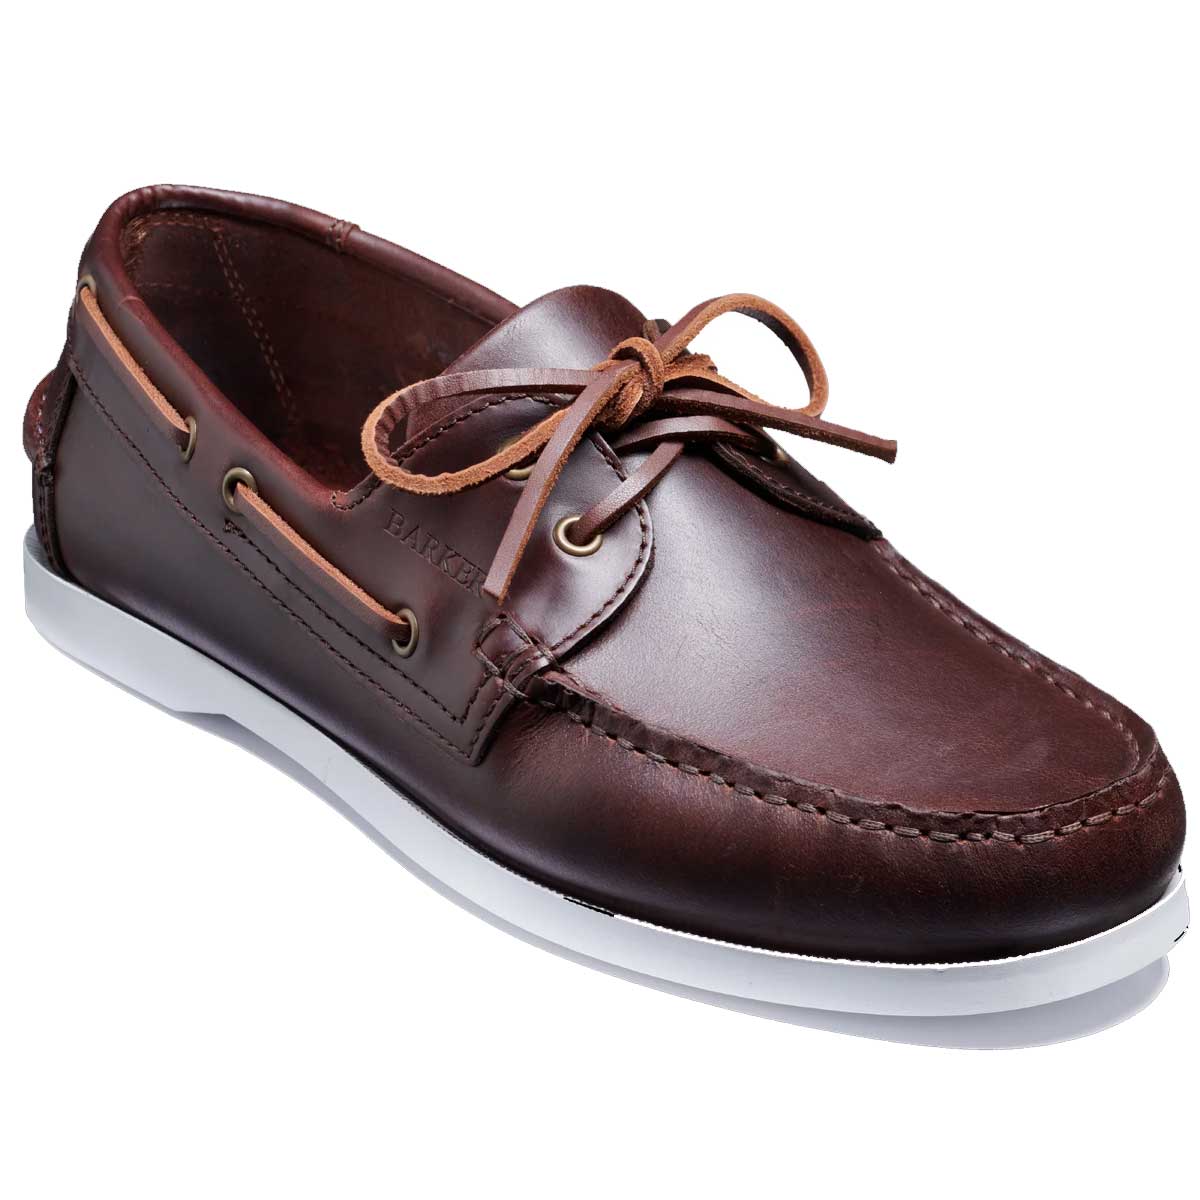 BARKER Keel Deck Shoes - Mens - Brown Pull Up